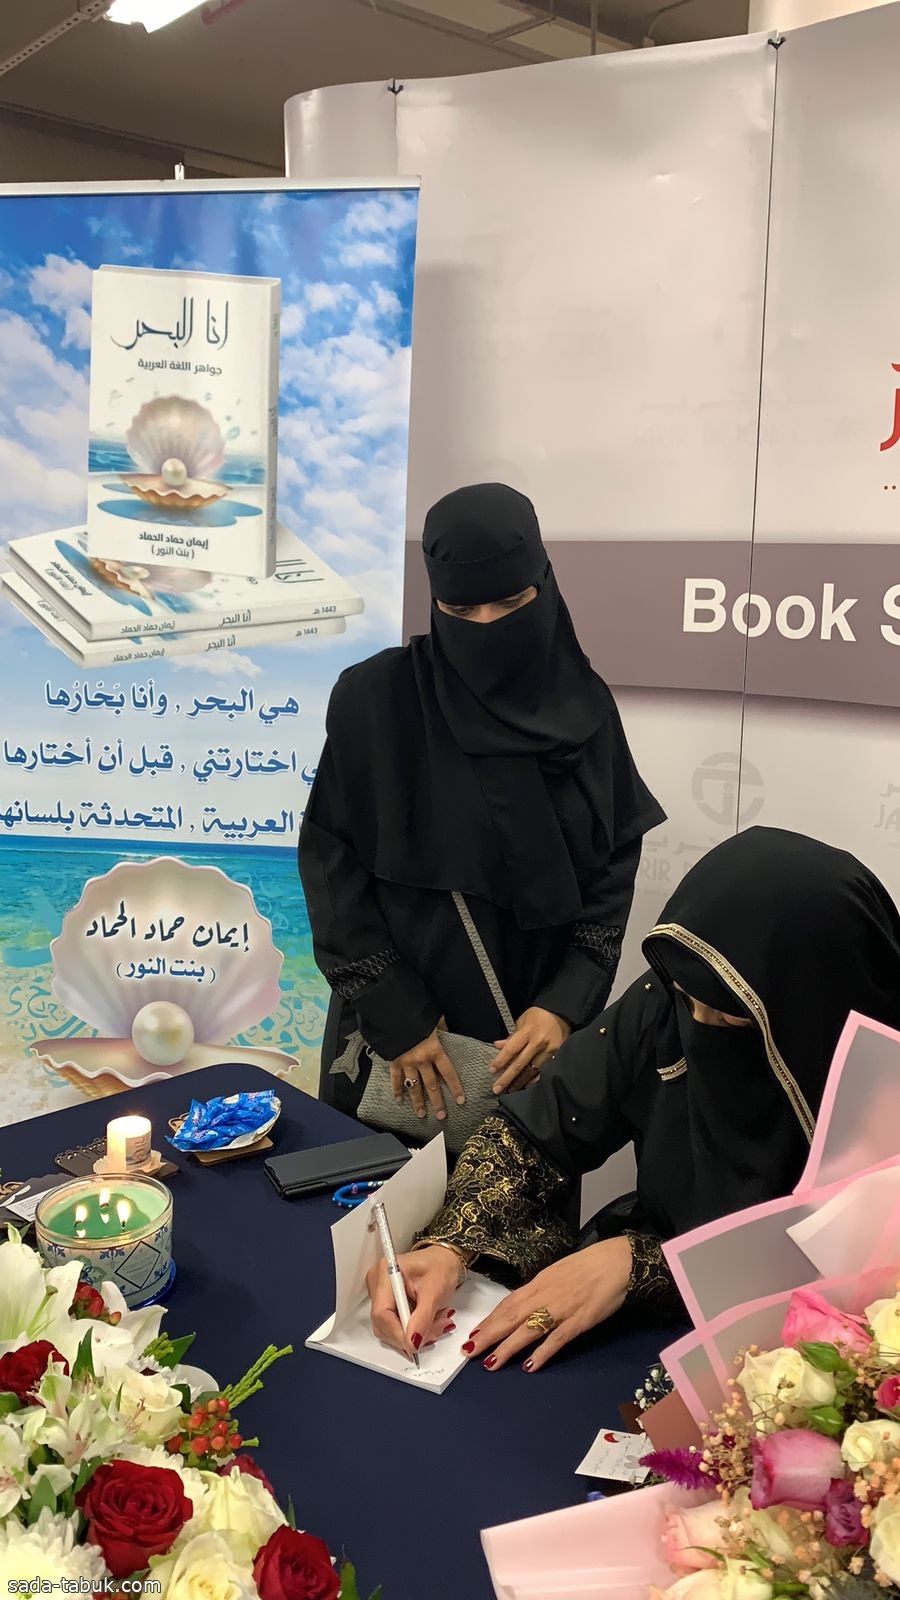 الكاتبة إيمان حماد الحماد توقع كتاب (أنا البحر) مع مكتبة جرير بالمدينة المنورة